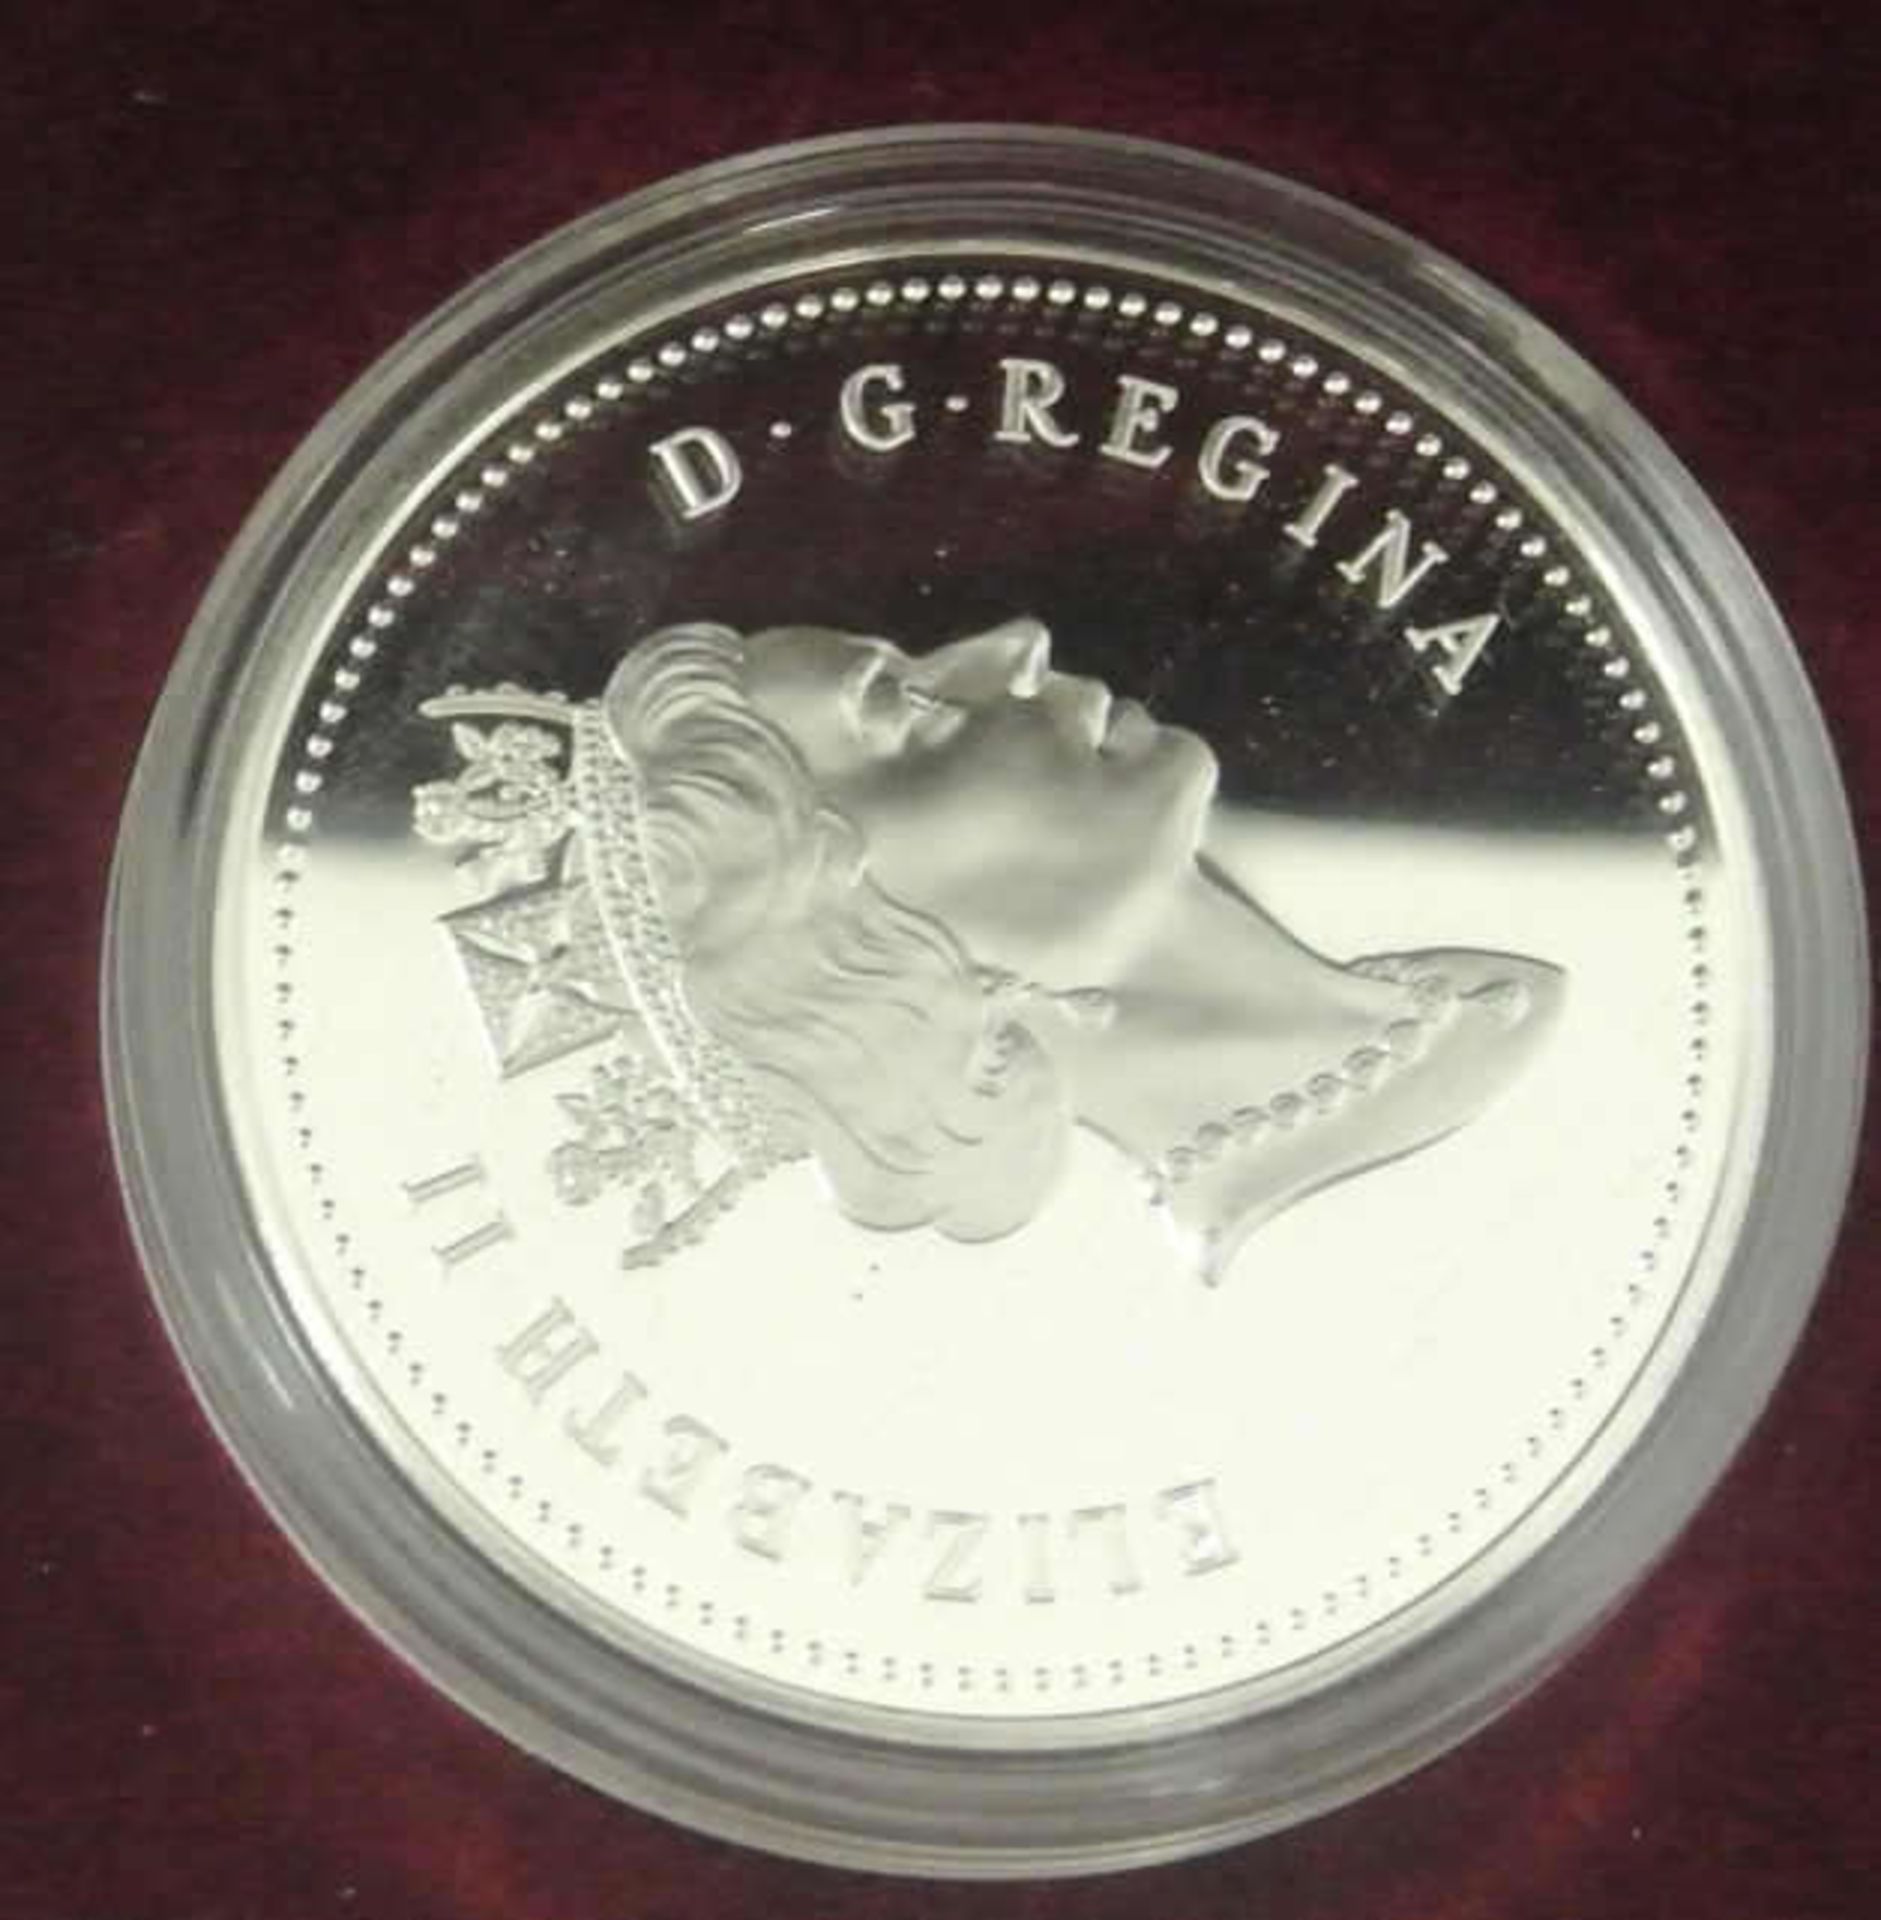 1 Kanada Dollar 1997, Spiegelglanz, sowie 1x USA Bicentennial Coinage Set 1976 - Bild 3 aus 3